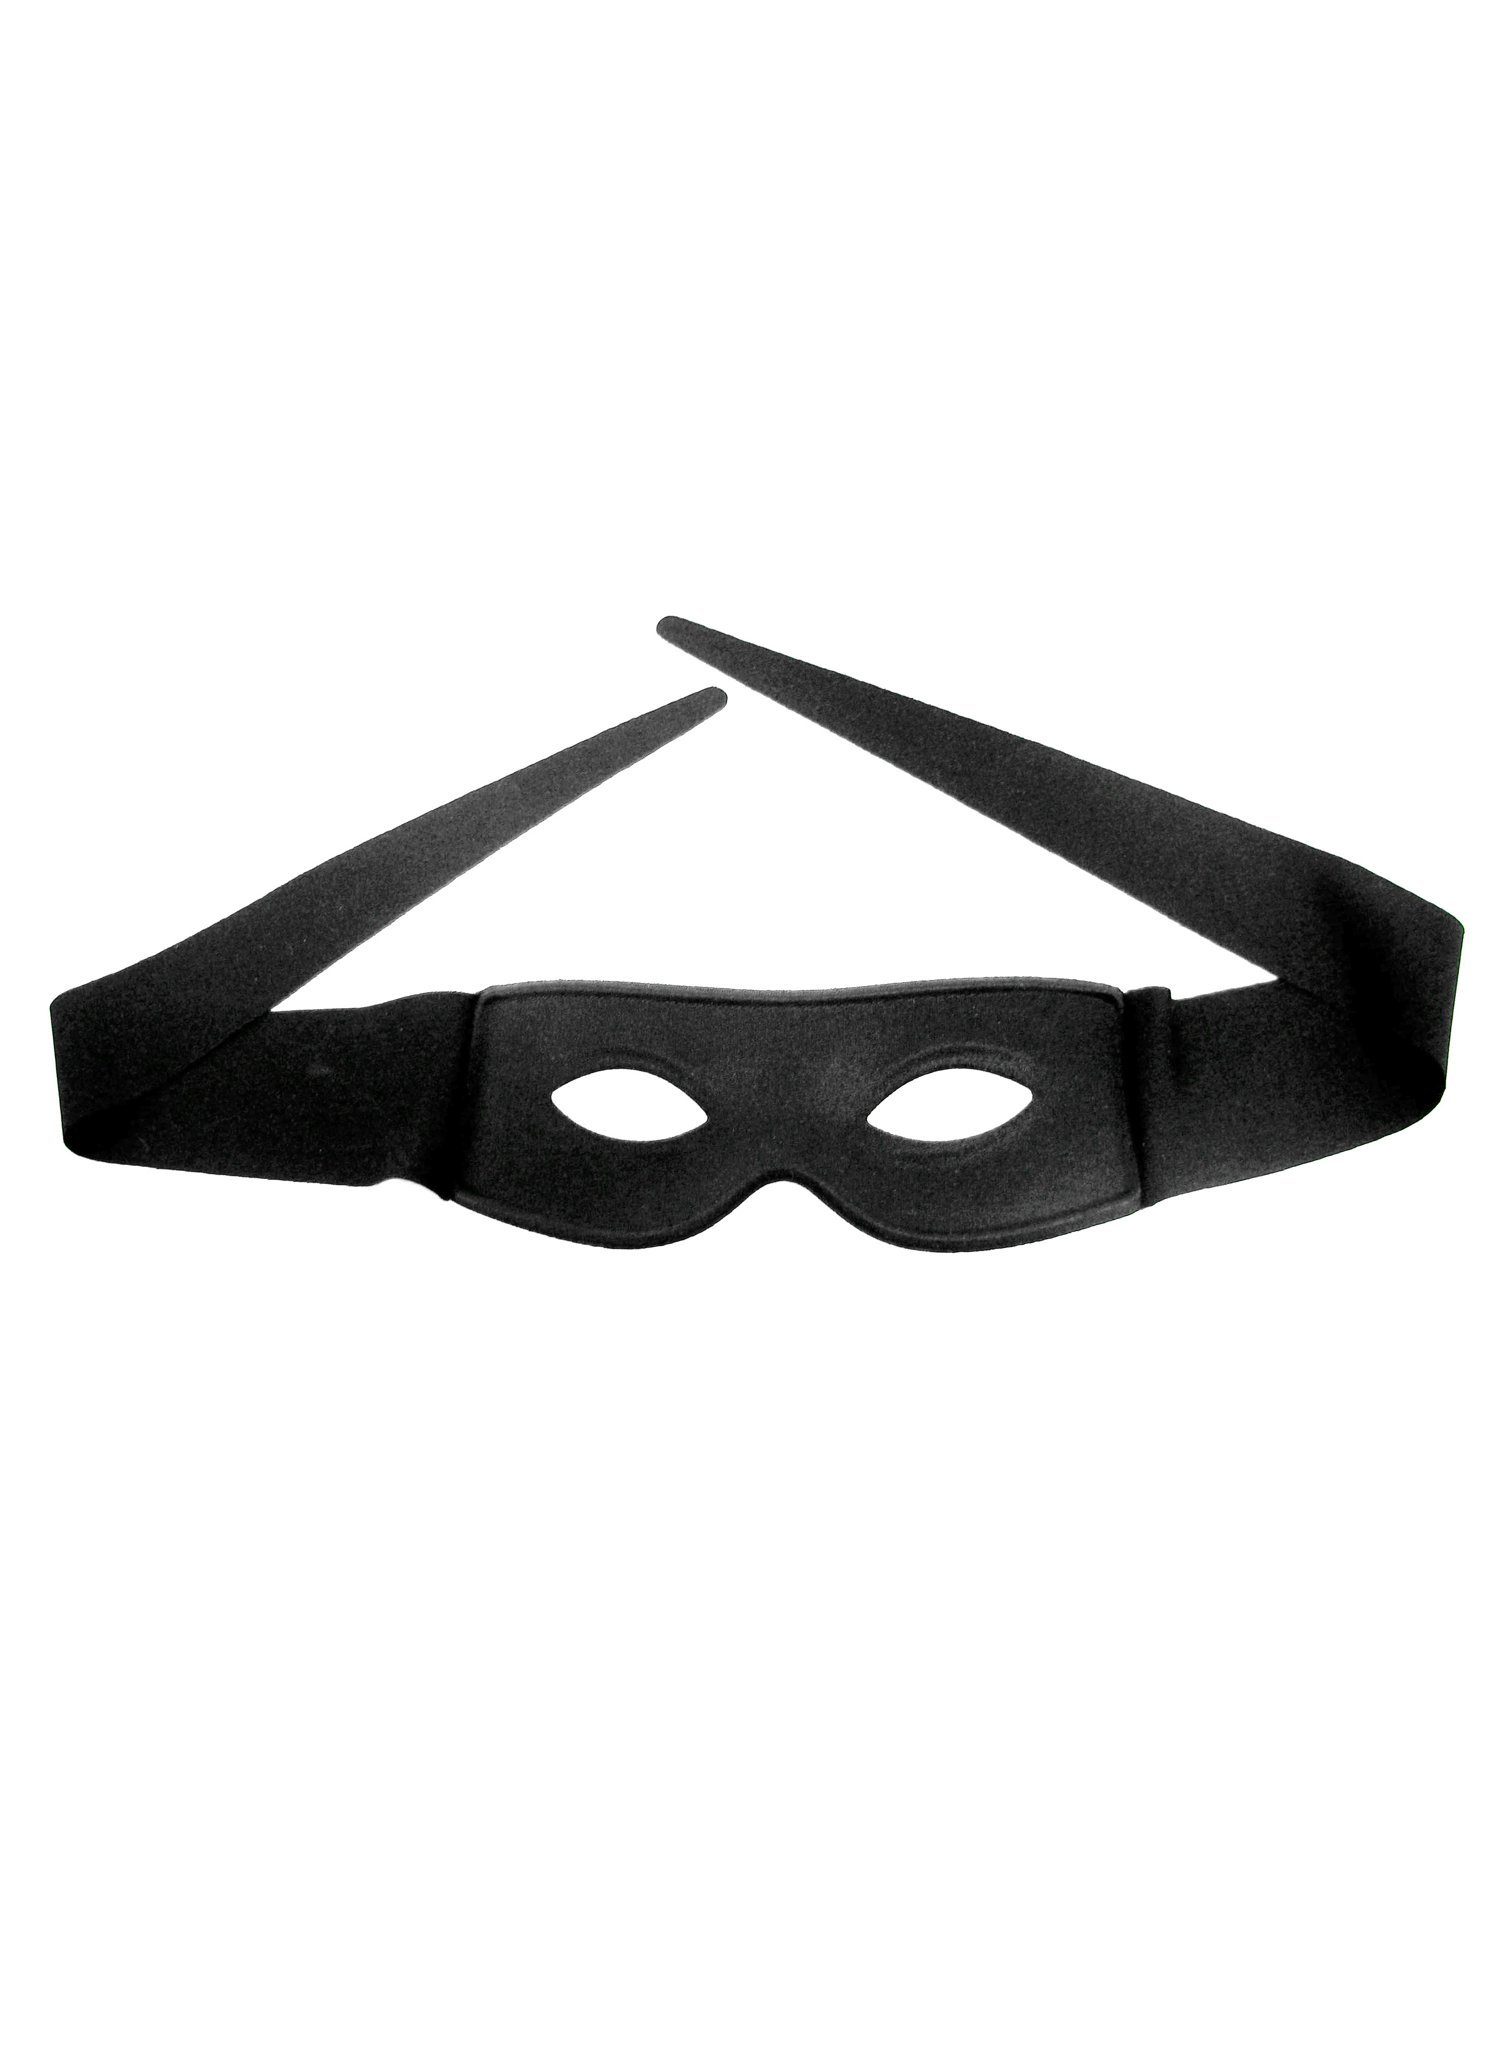 Metamorph Verkleidungsmaske Schwarze Augenmaske, Vielseitig einsetzbar von Zorro bis Panzerknacker